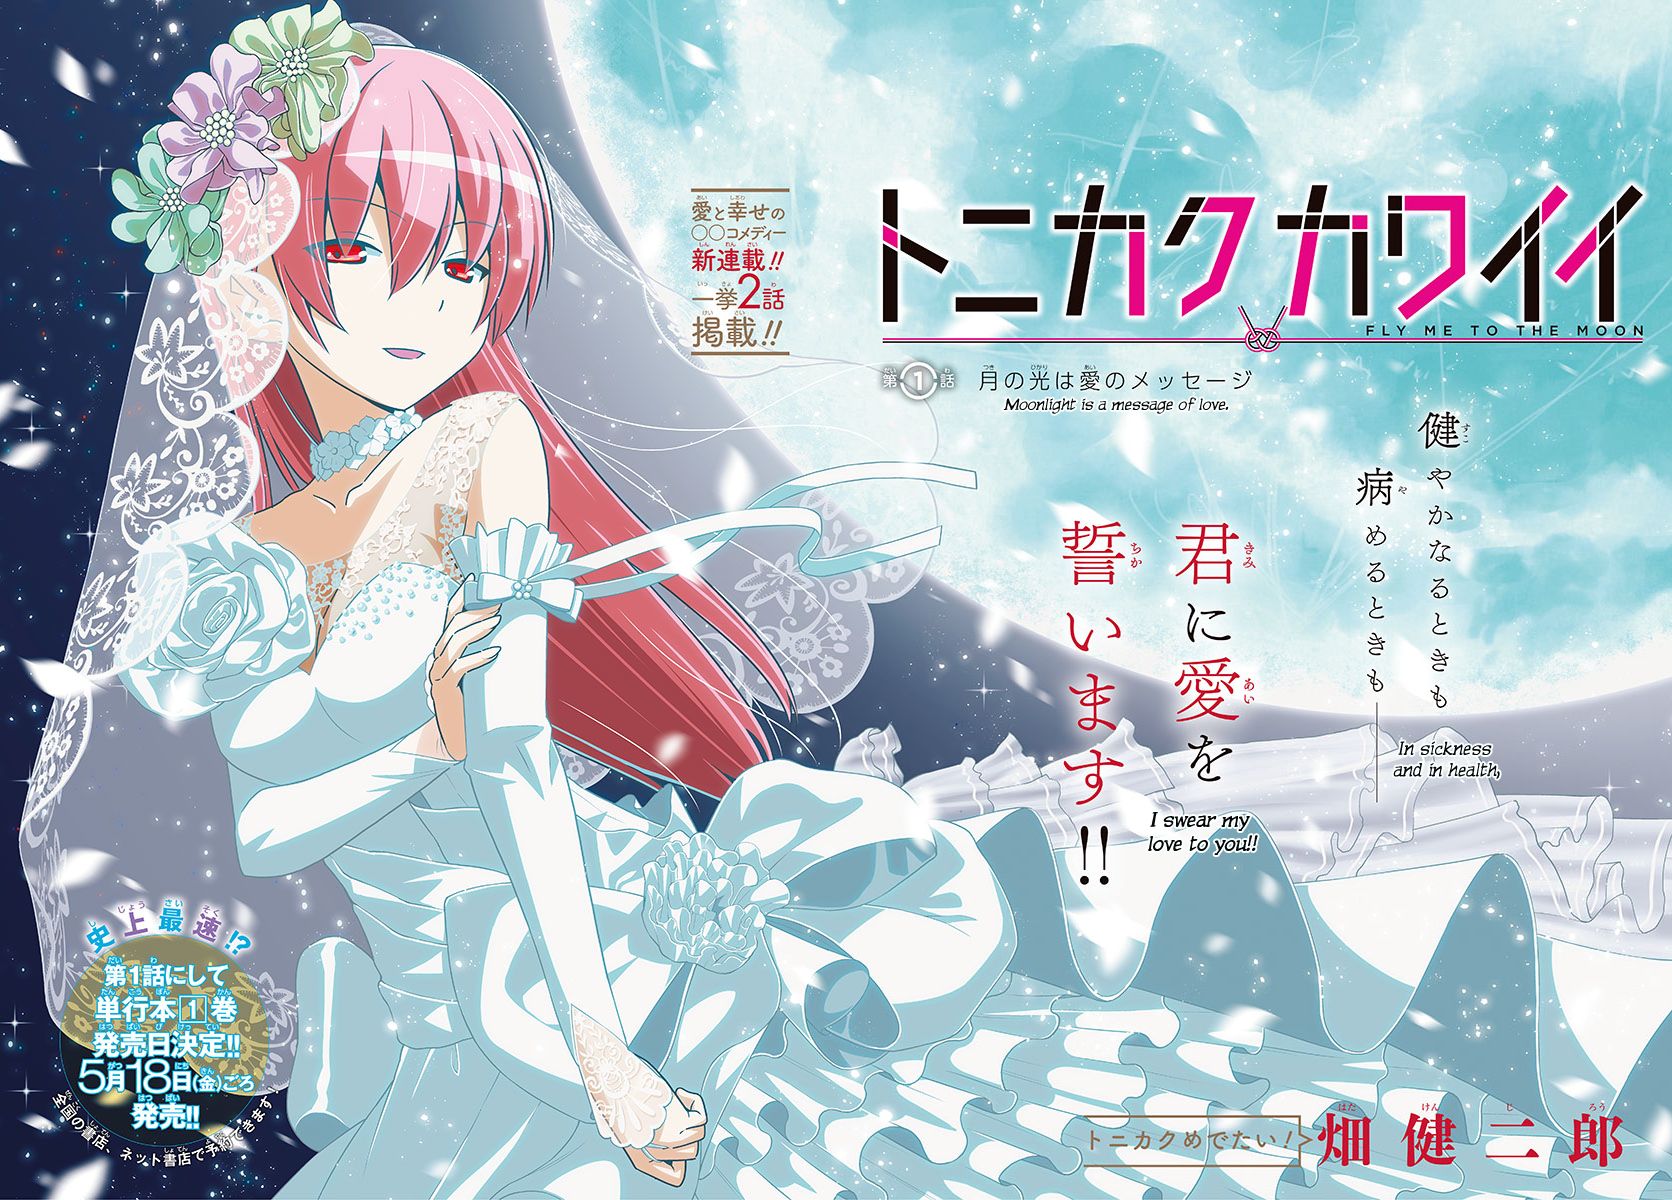 Read Tonikaku Cawaii Manga English New Chapters Online Free Mangaclash